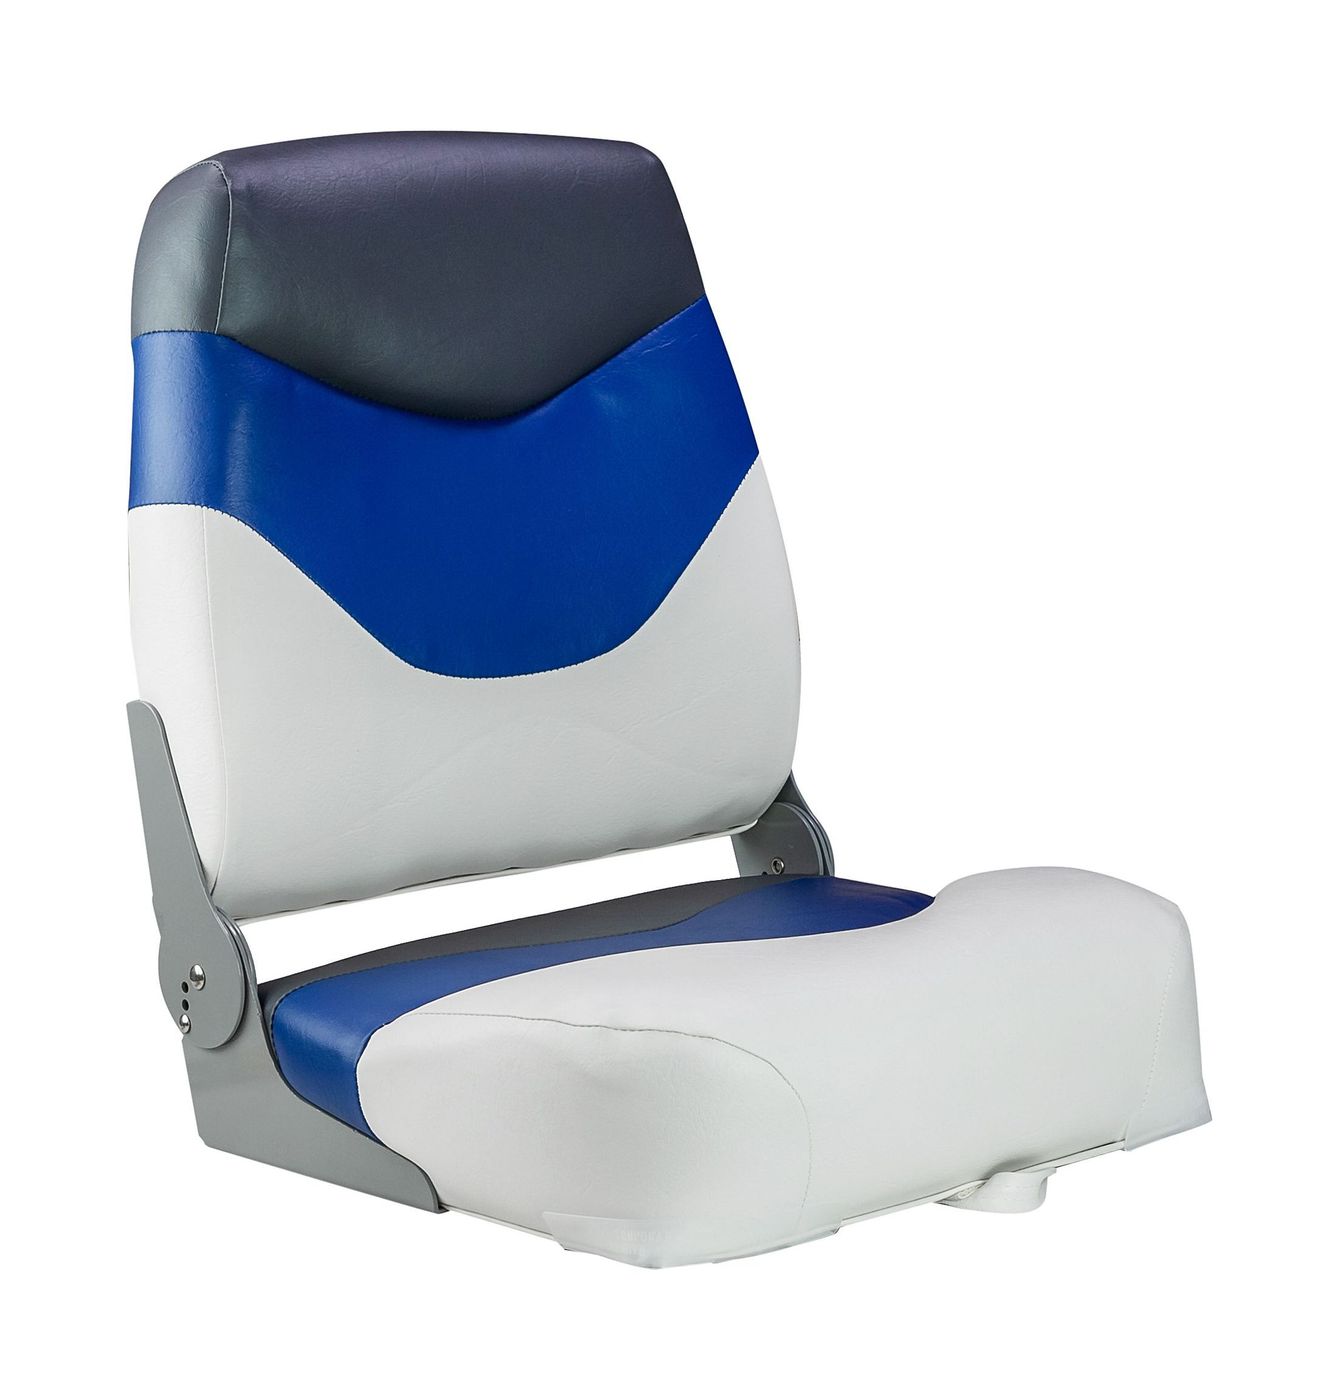 Кресло мягкое складное Premium, обивка винил, цвет белый/синий/угольный, Marine Rocket 75128WBC-MR соковыжималка центробежная starwind sj2326 750 вт синий белый